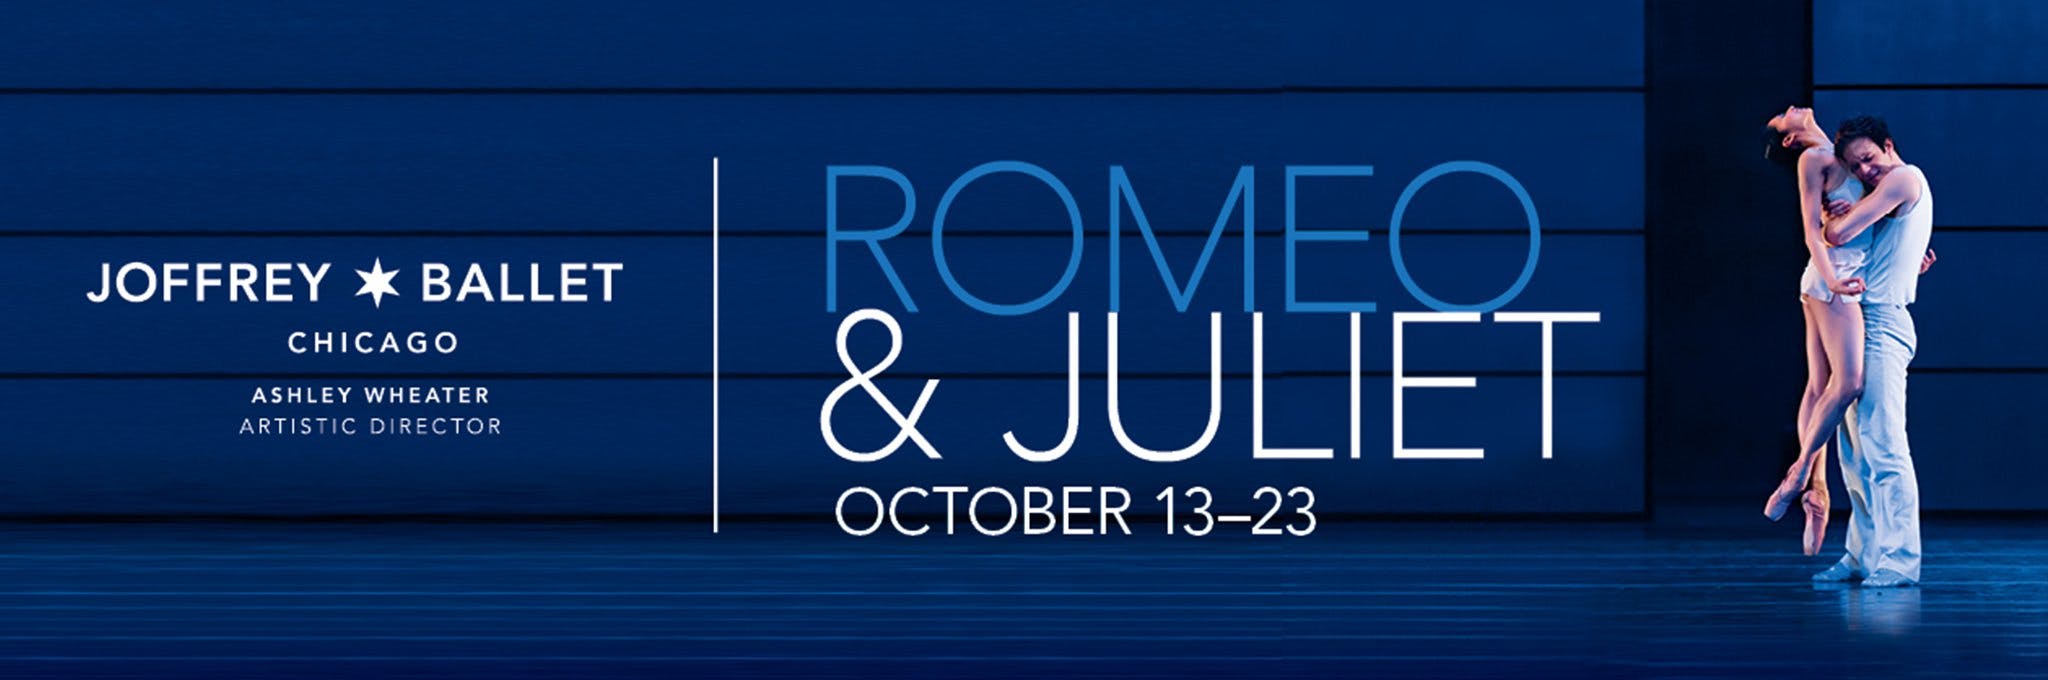 Romeo & Juliet Rush Tickets Chicago TodayTix